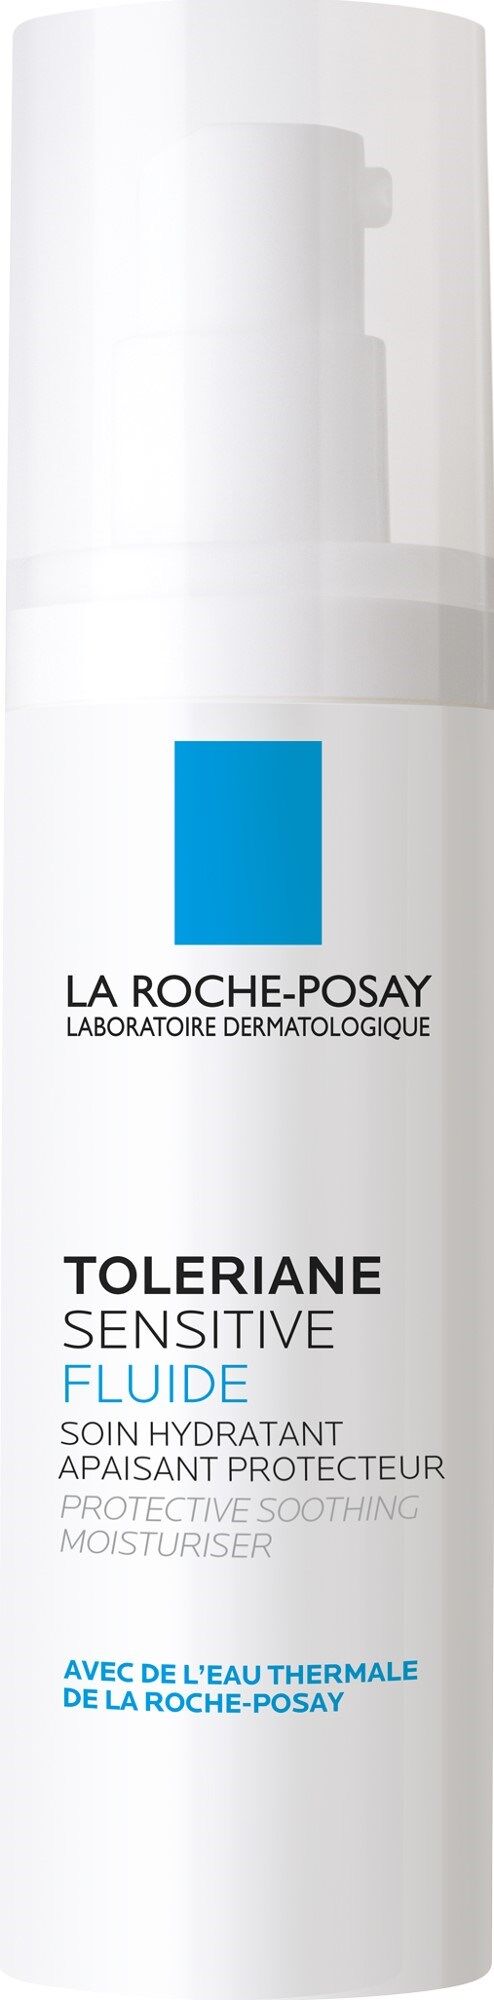 La Roche-Posay Toleriane Fluido prebiótico sensible para pieles mixtas 40mL